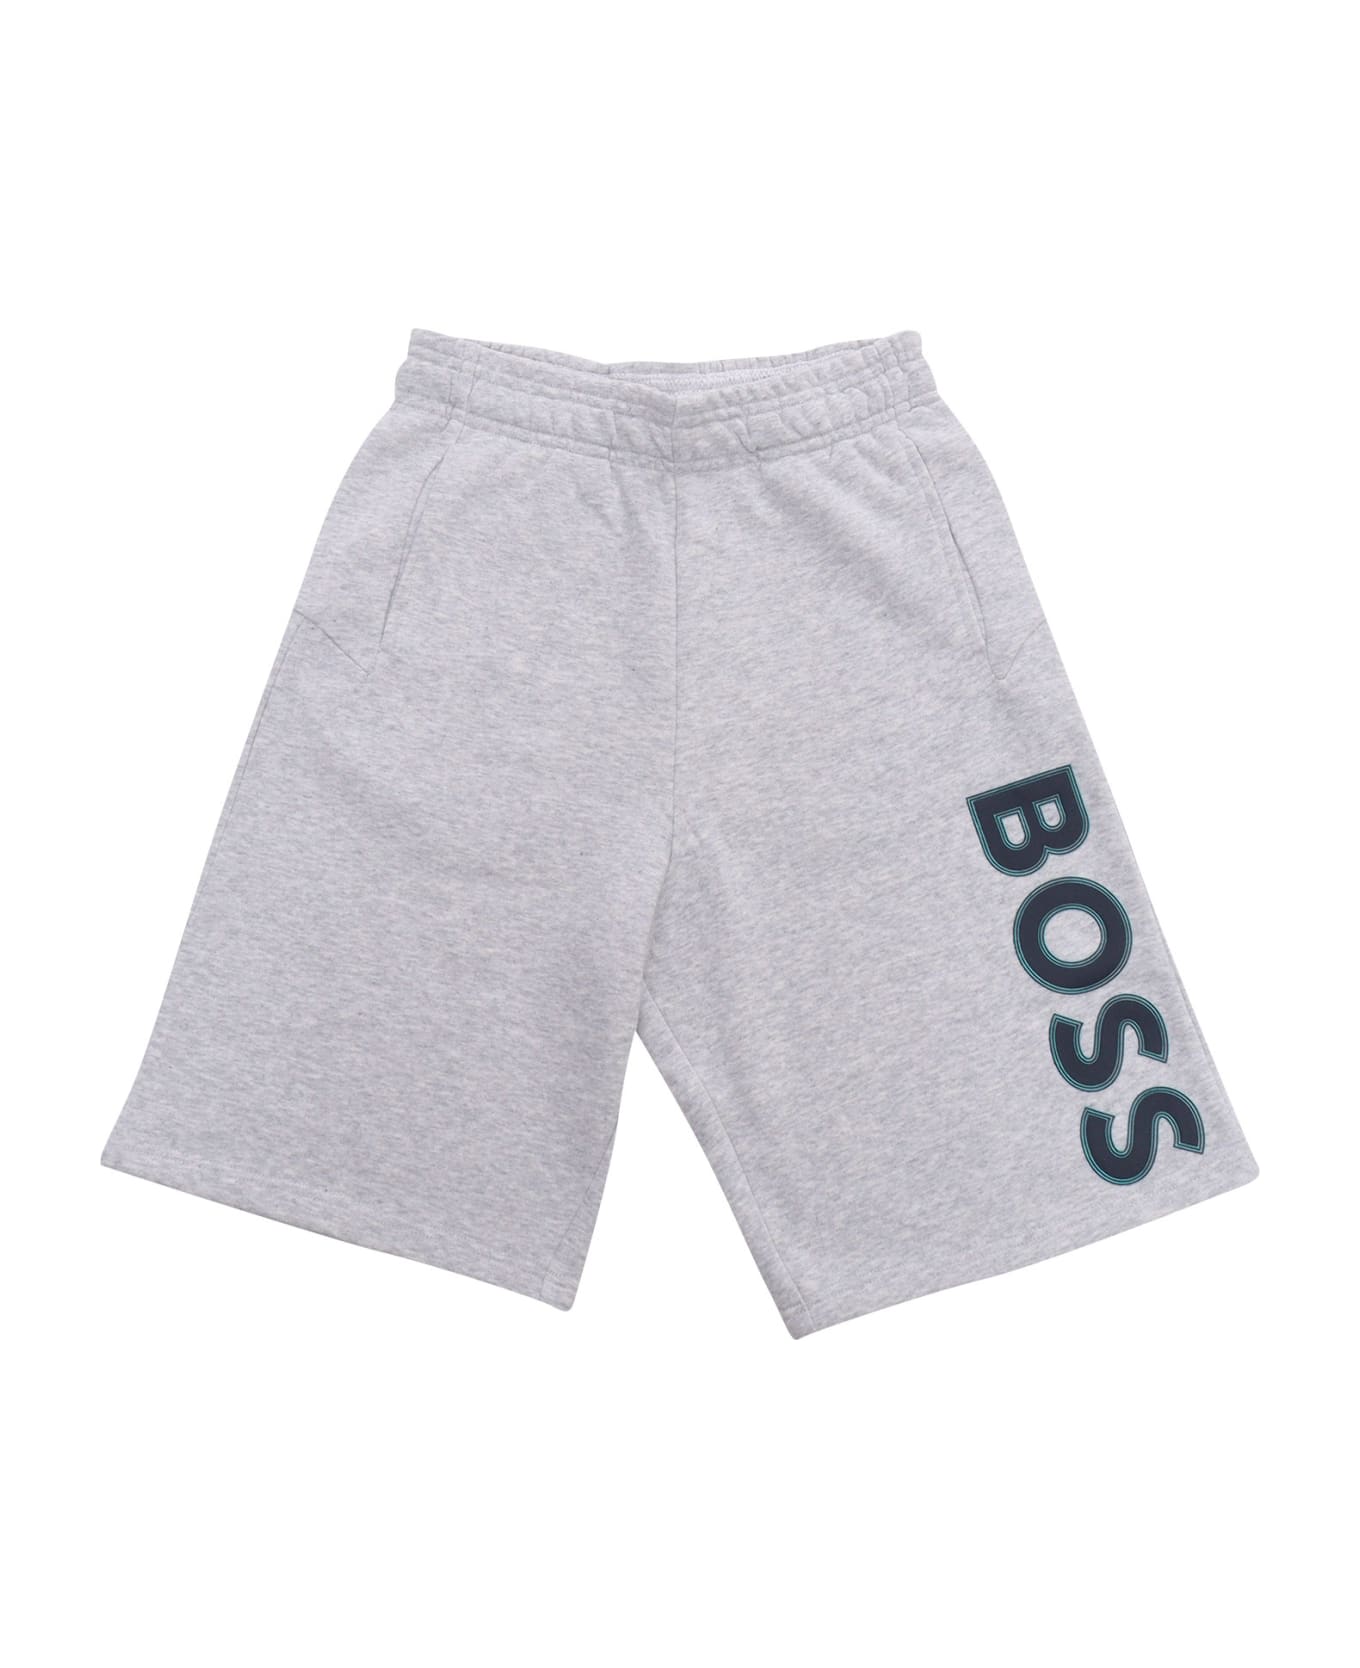 Hugo Boss Gray Shorts With Logo - GREY